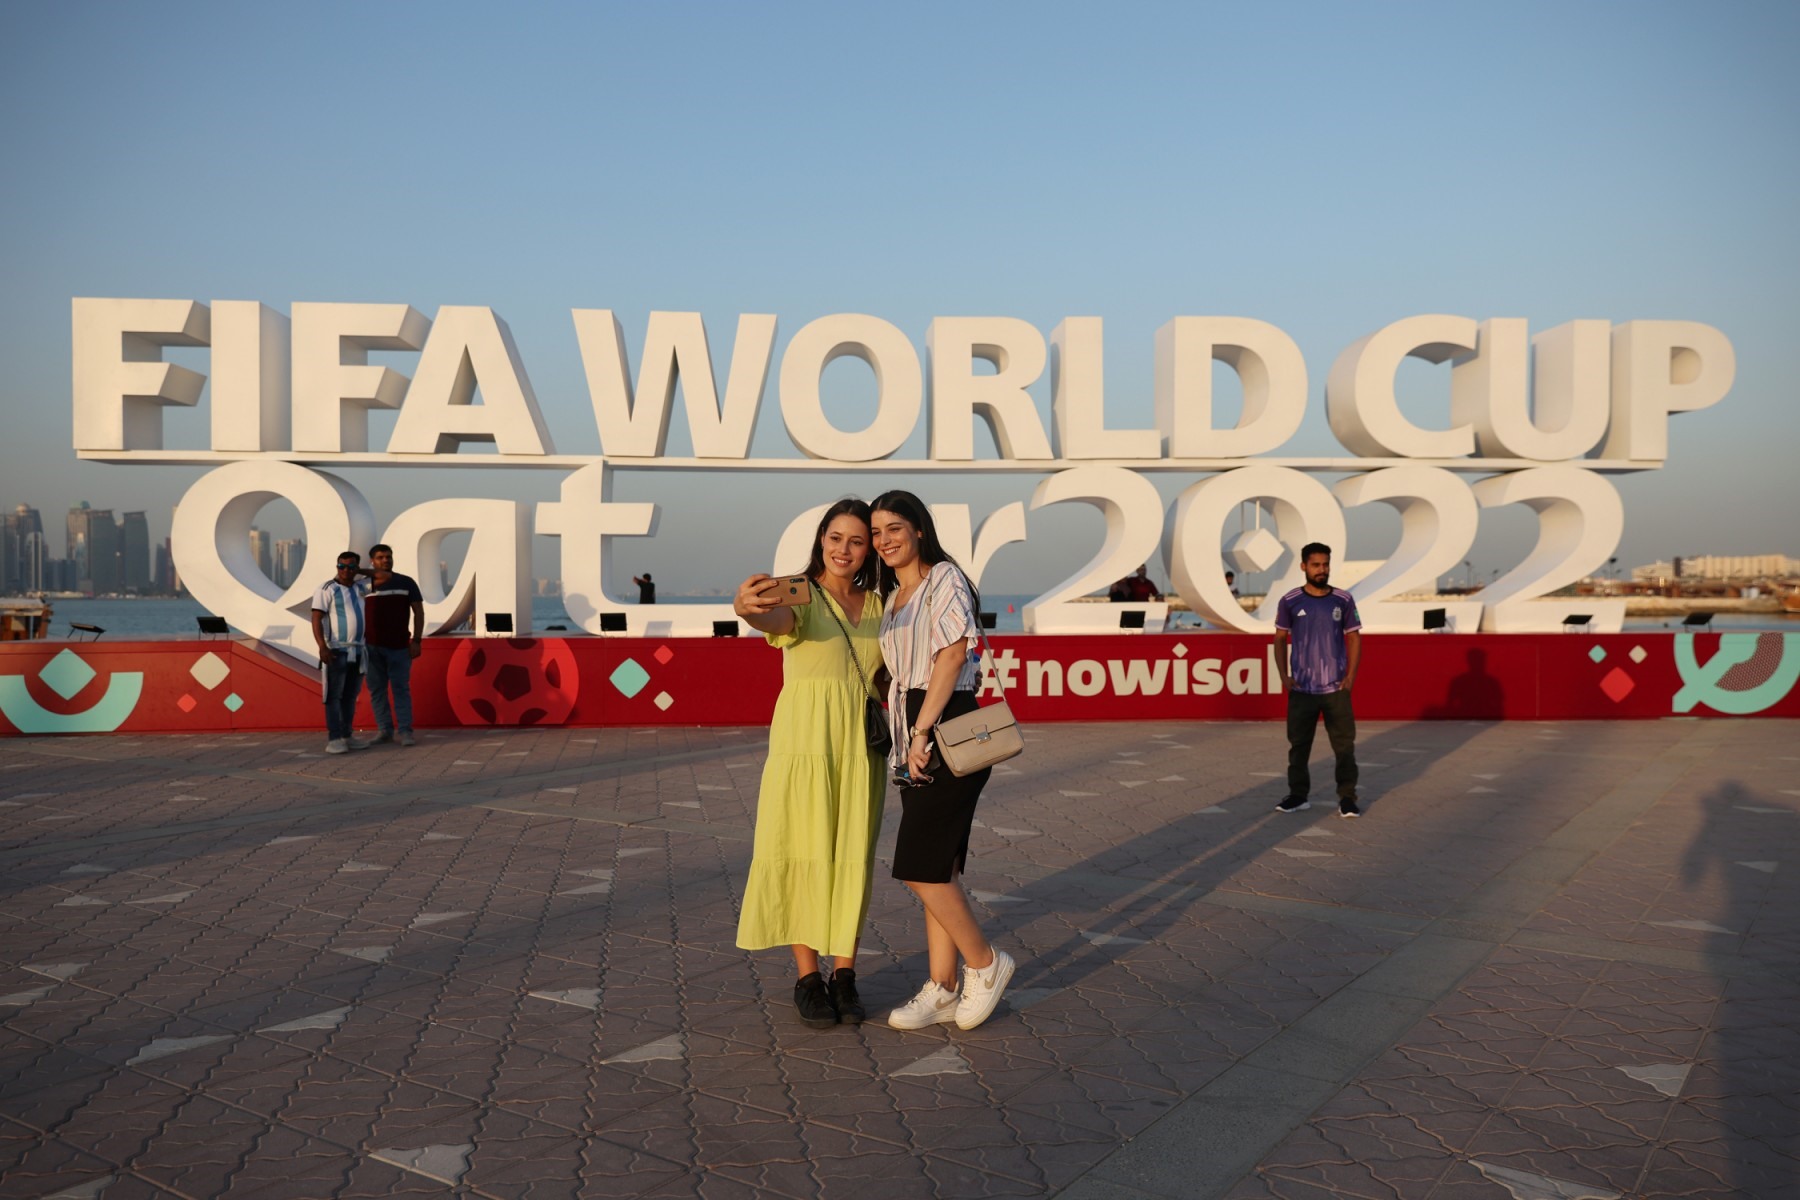 Người dân và du khách chụp ảnh với tấm biển FIFA World Cup ở Doha vào ngày 16.11.2022, trước thềm vòng chung kết World Cup 2022 tại Qatar. Ảnh: Adrian Dennis/AFP